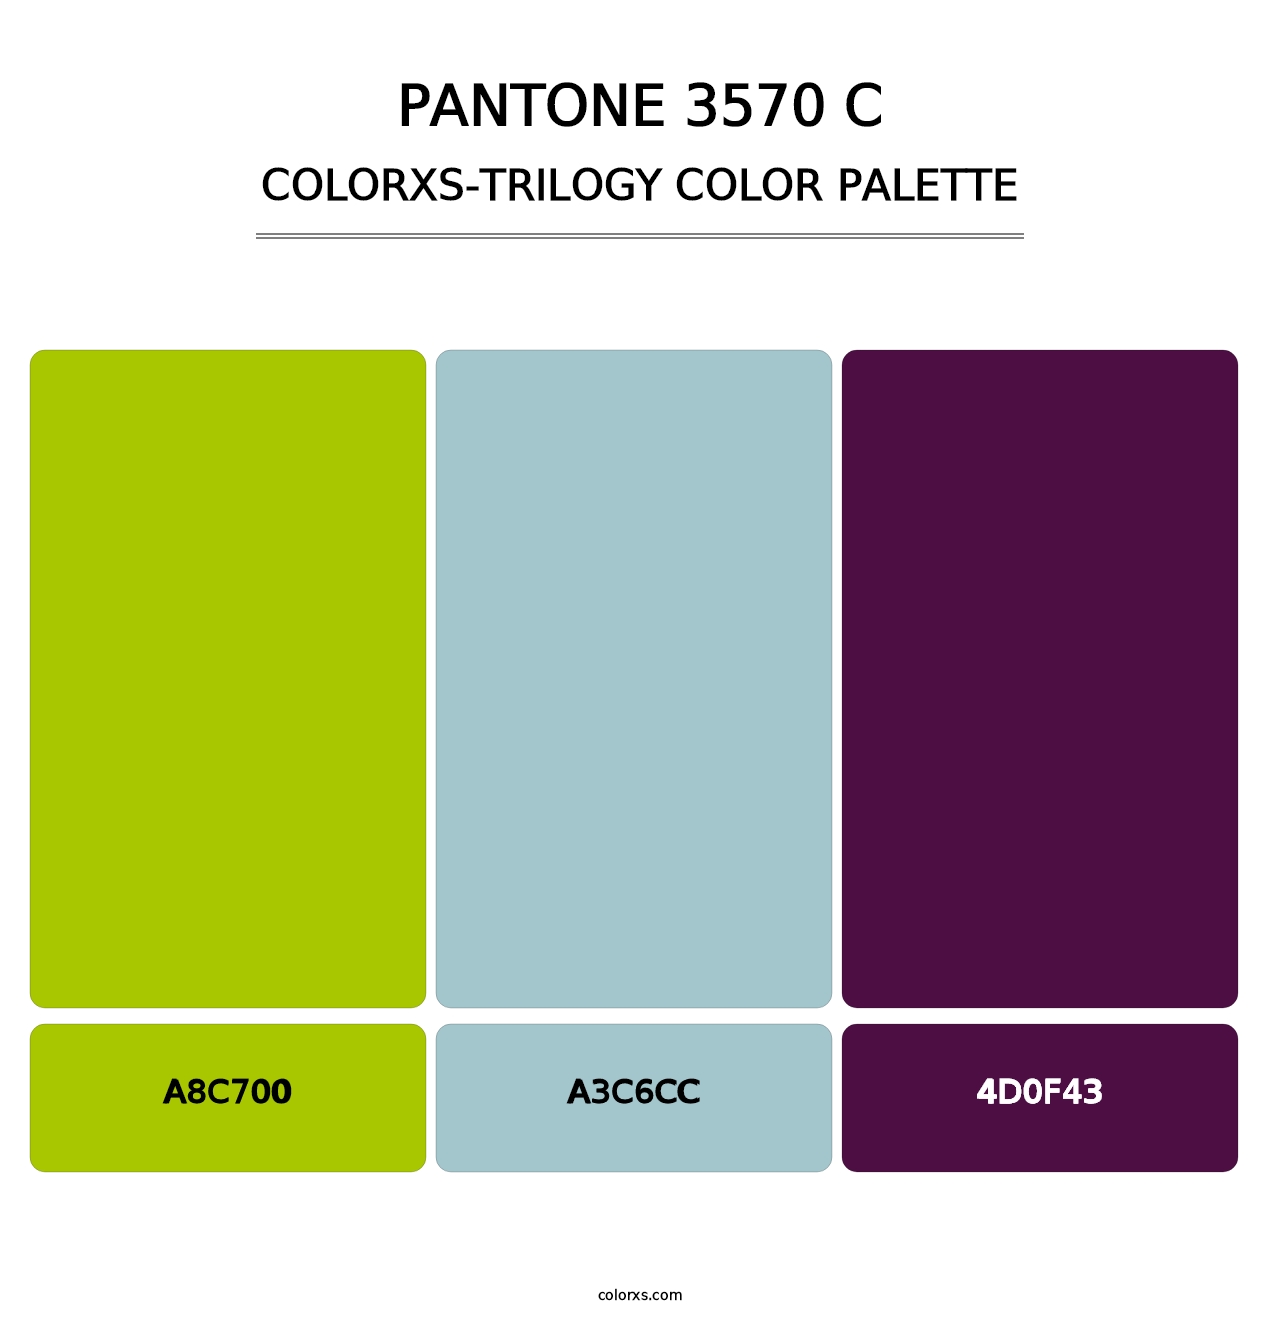 PANTONE 3570 C - Colorxs Trilogy Palette